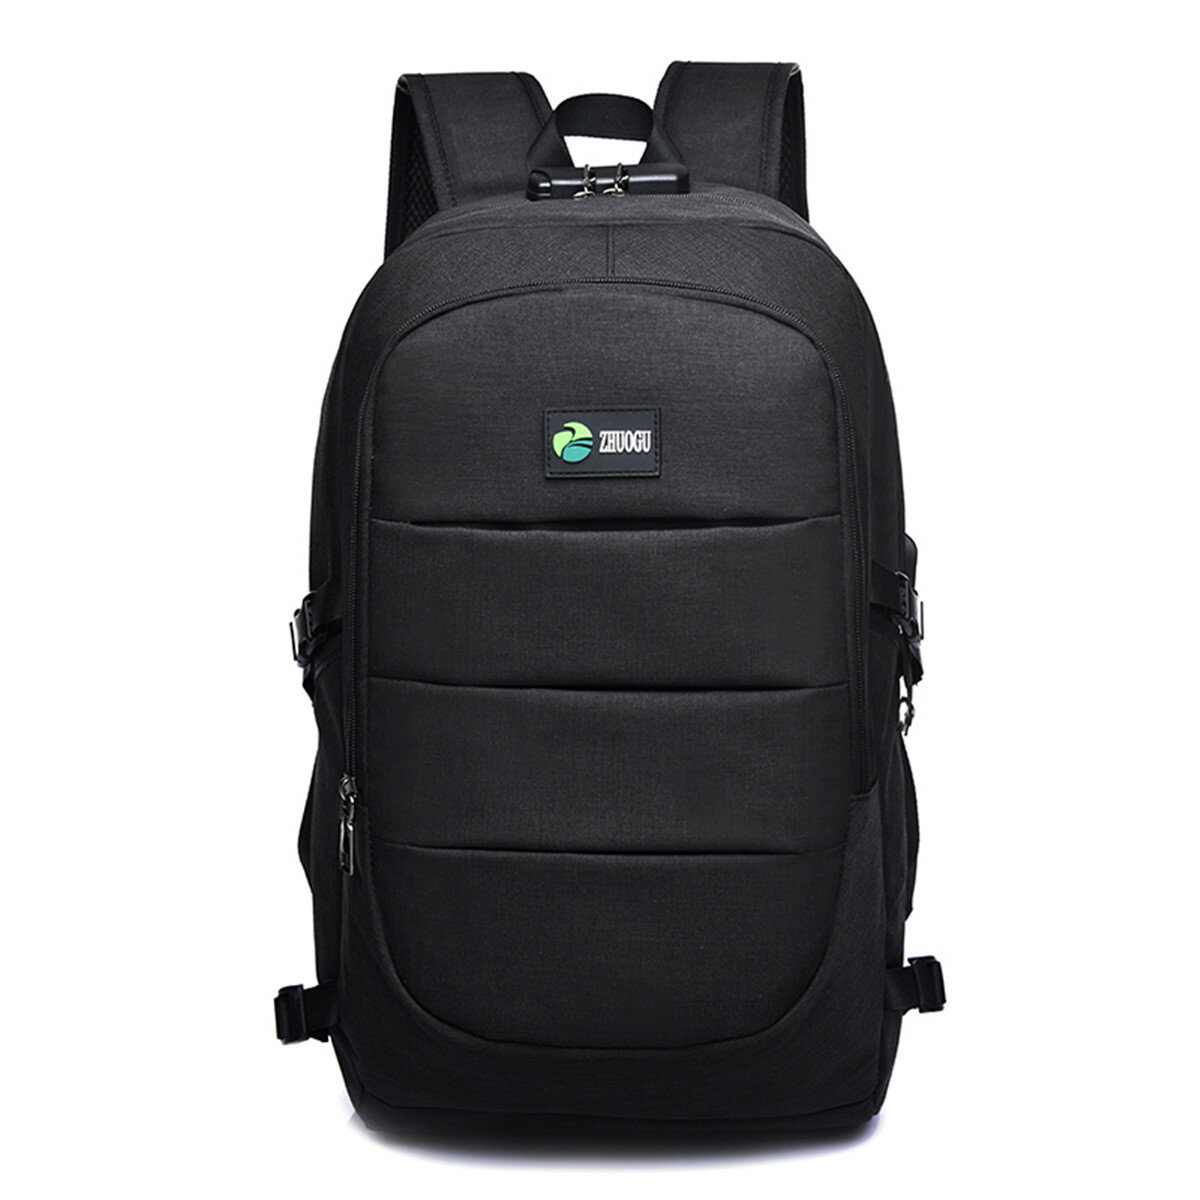 17L-es USB töltő hátizsák multifunkcionális vízálló védelem a lopás ellen 15 hüvelykes laptop táska